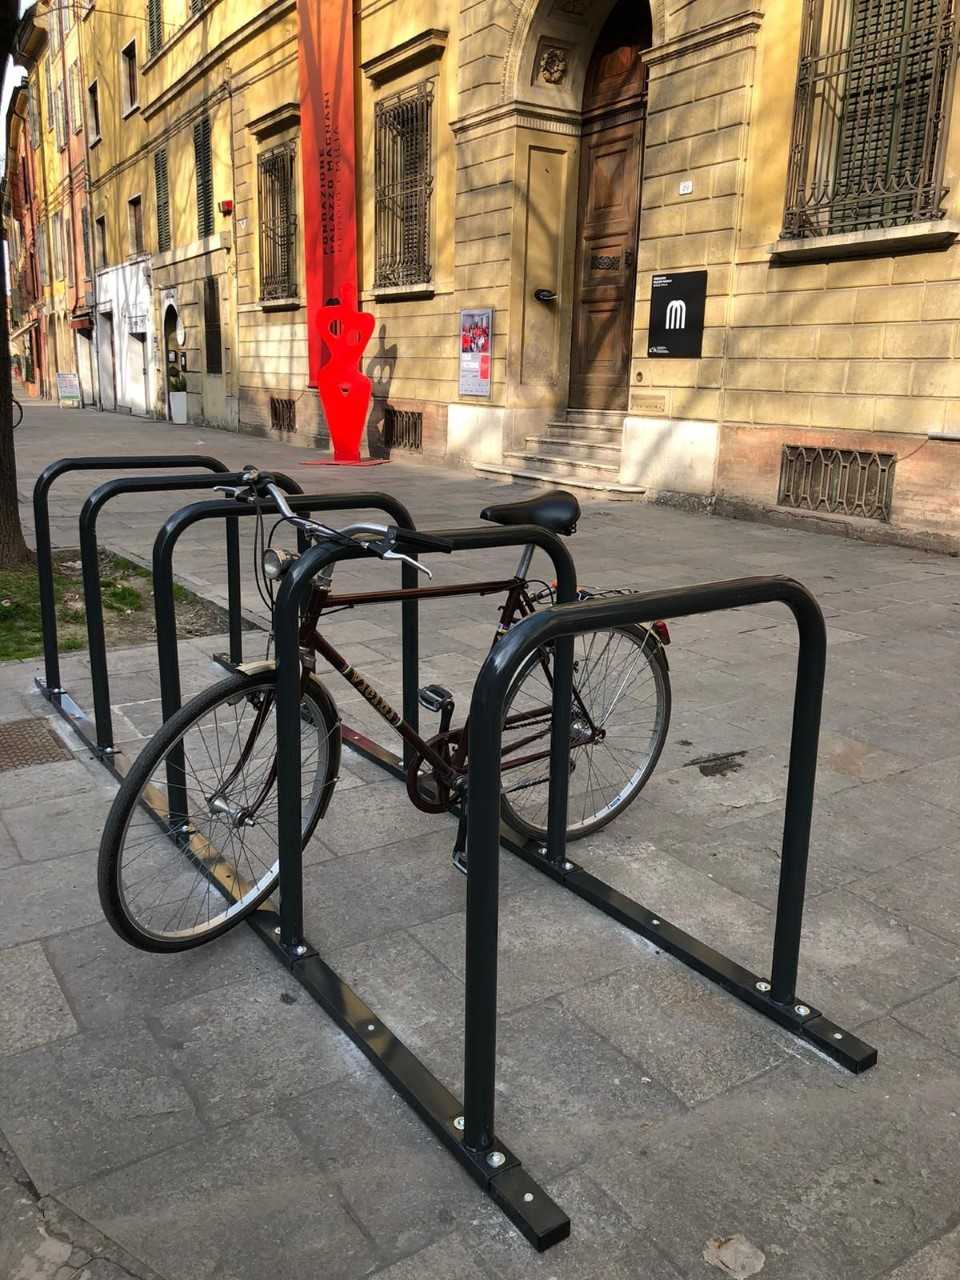 Reggio. Rastrelliere per biciclette in centro con formato